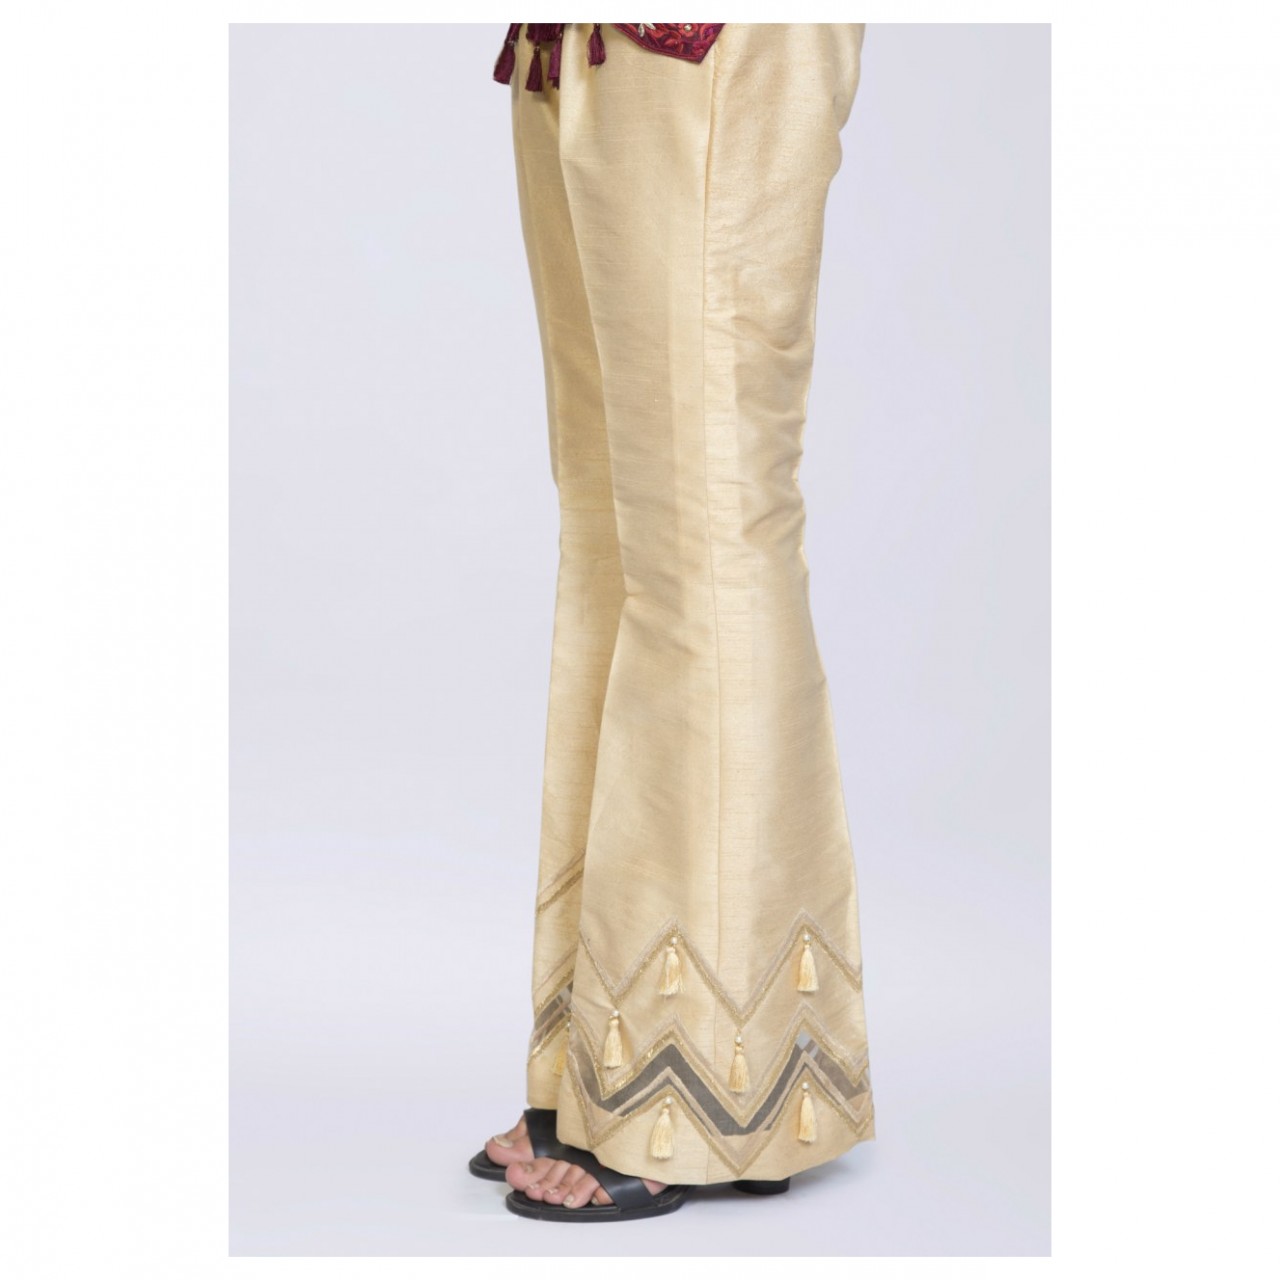 Bell Bottom Trouser For Women - Gold Sand - Sale price - Buy